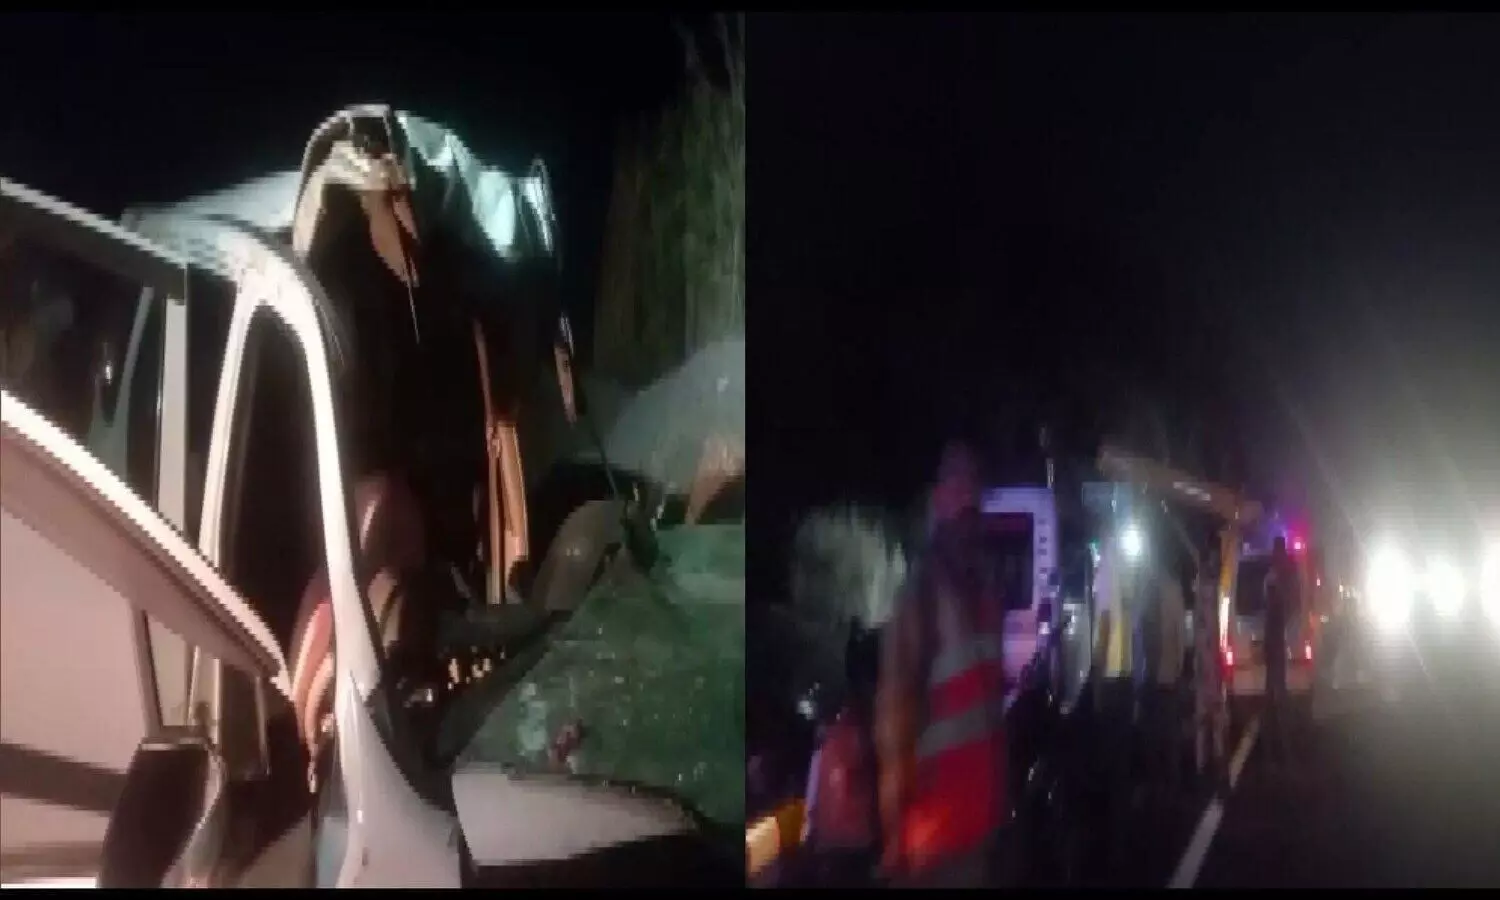 Maharashtra Accident